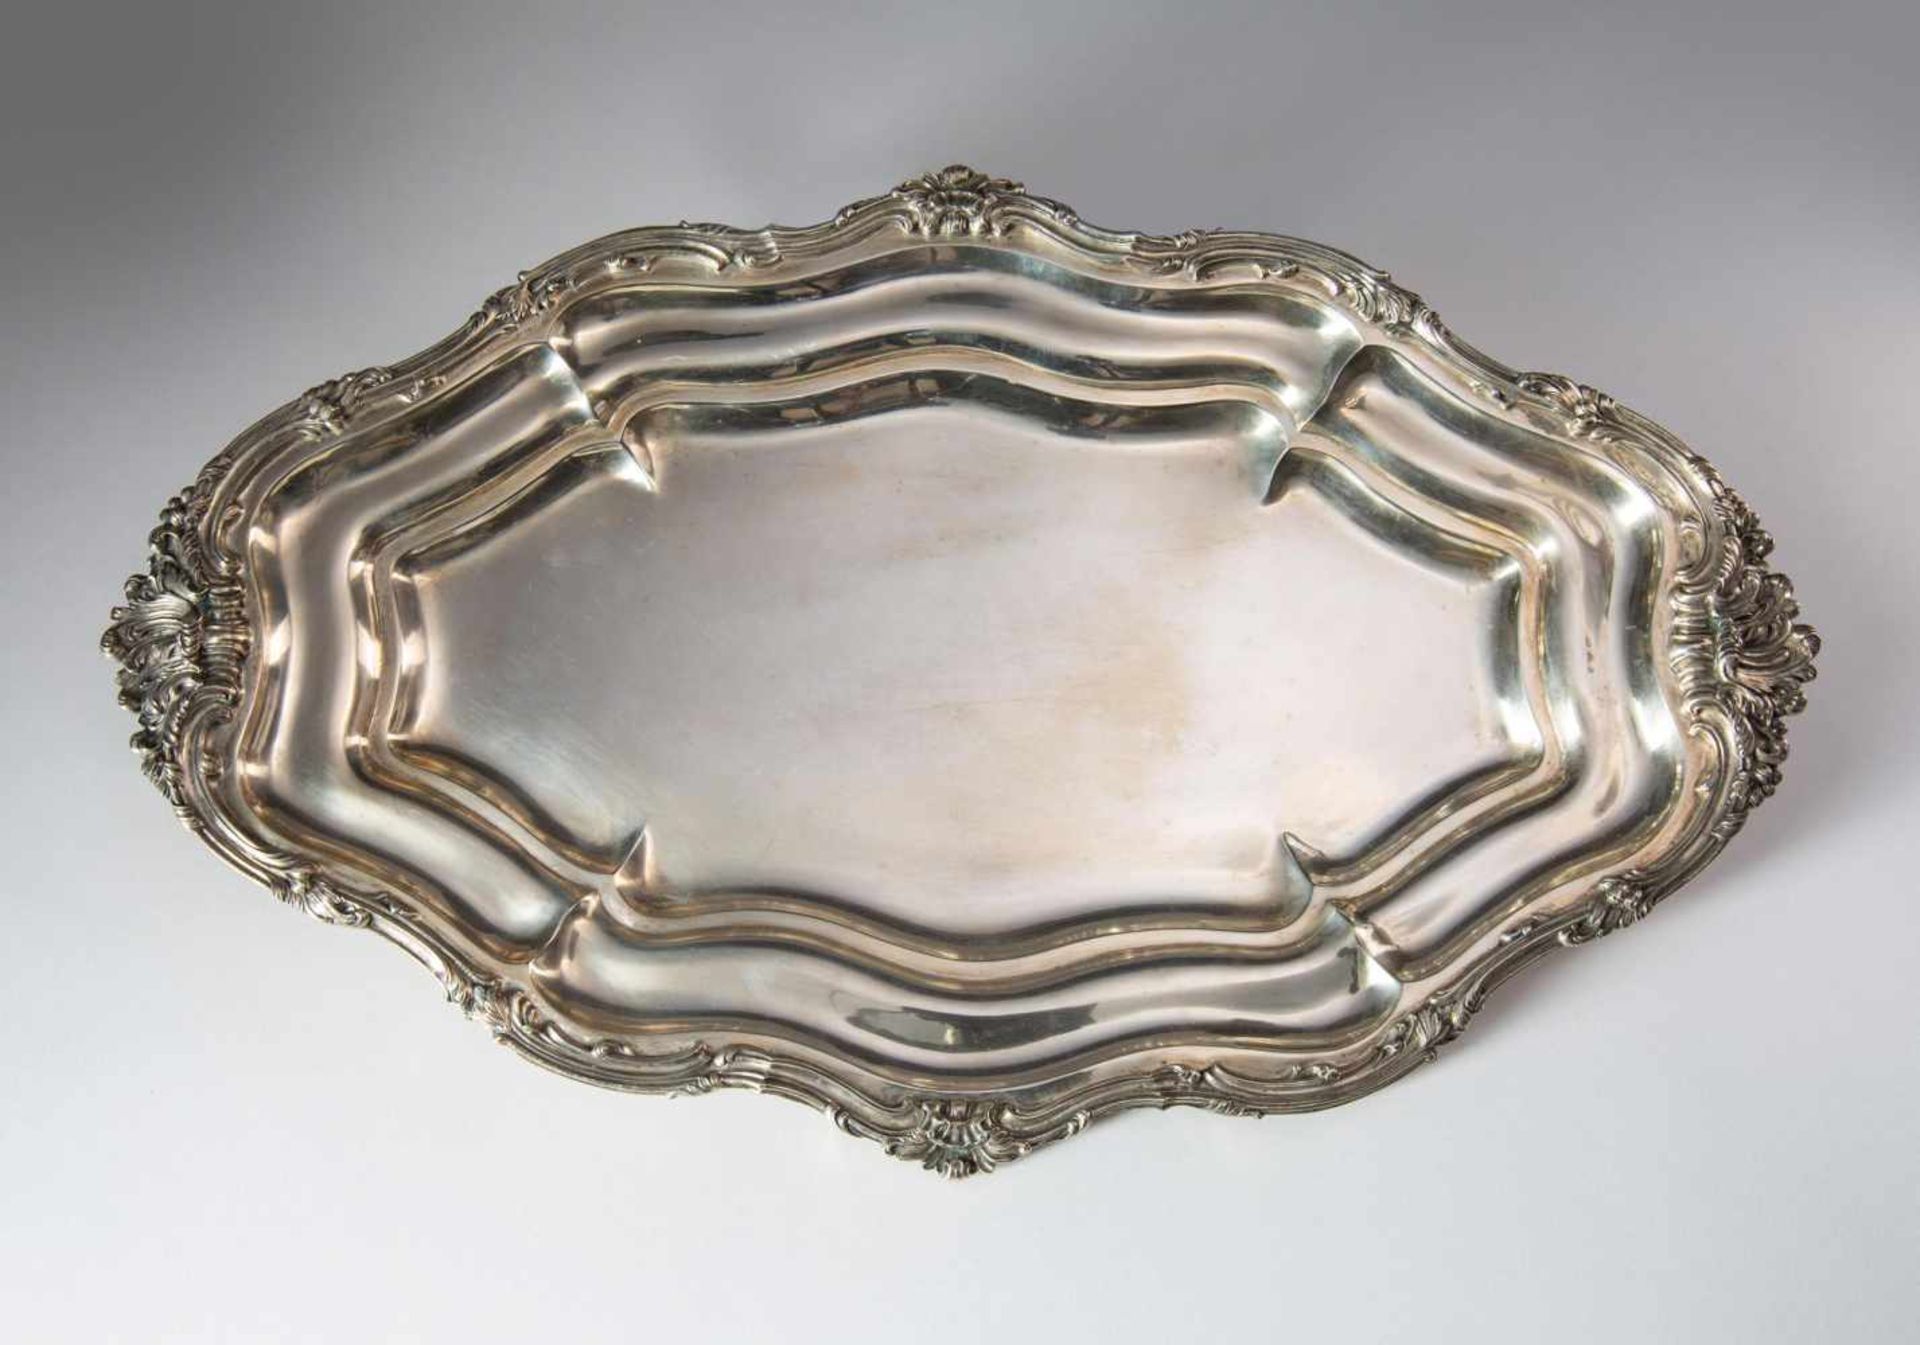 Große ovale Plattemit mehrfach gestuftem Rand in barocker Form, Silber "800" Pressburg, 65x40cm. - Bild 2 aus 3